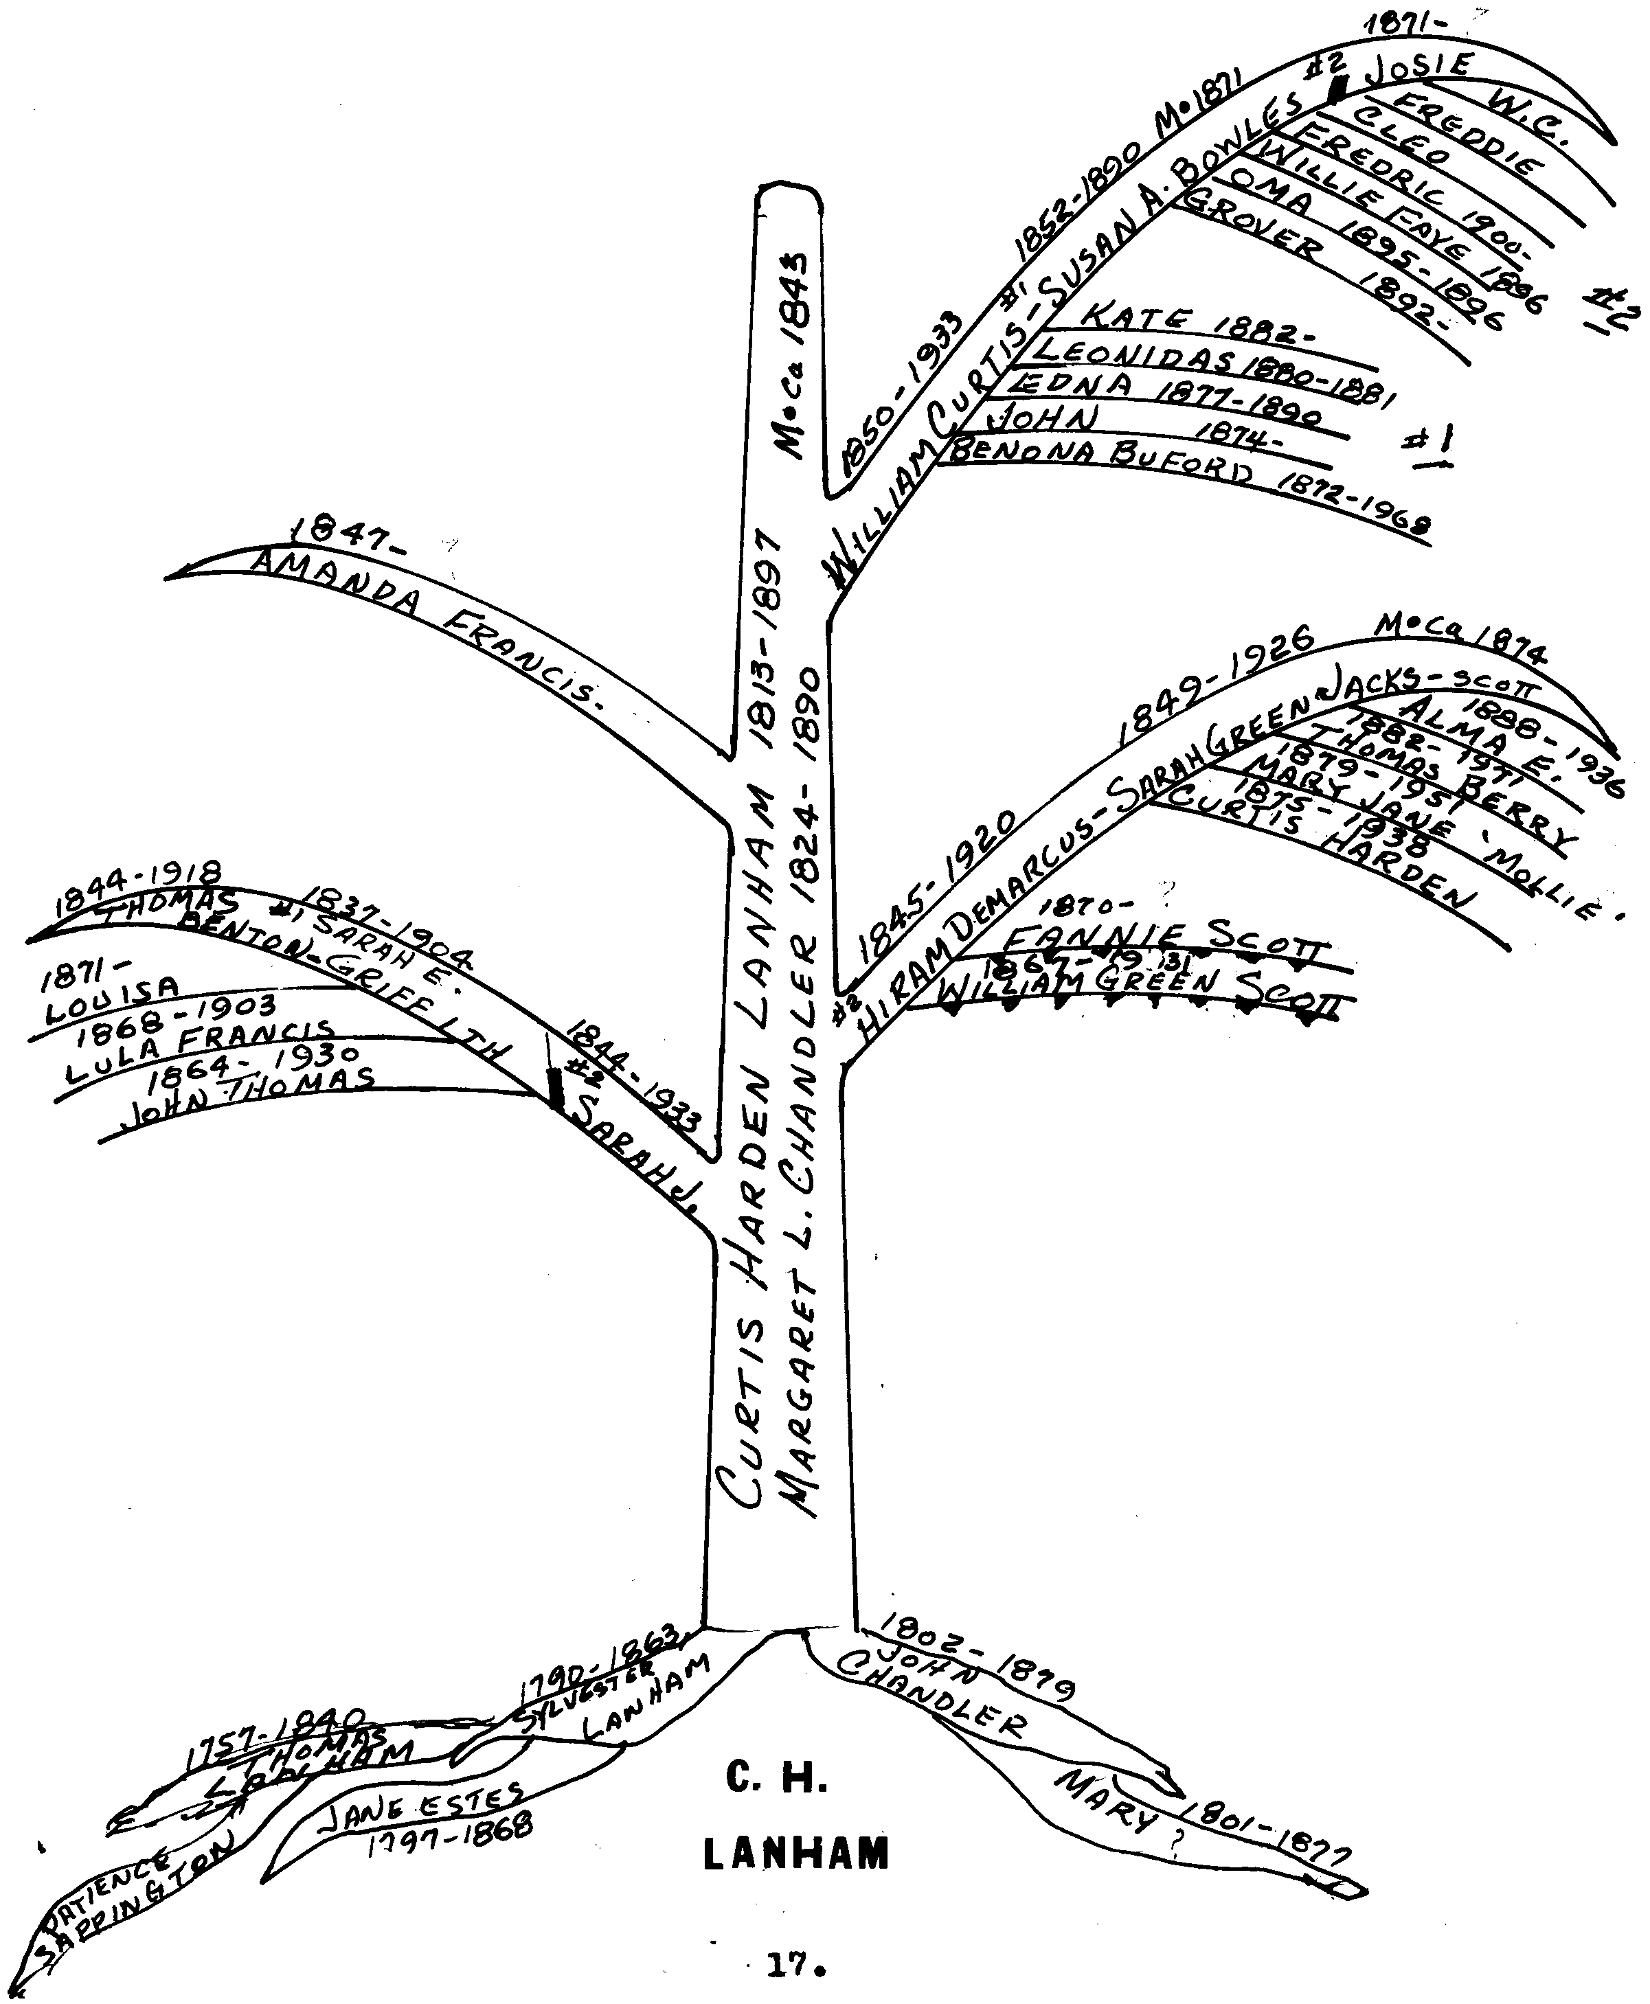 Hand drawn Family Tree